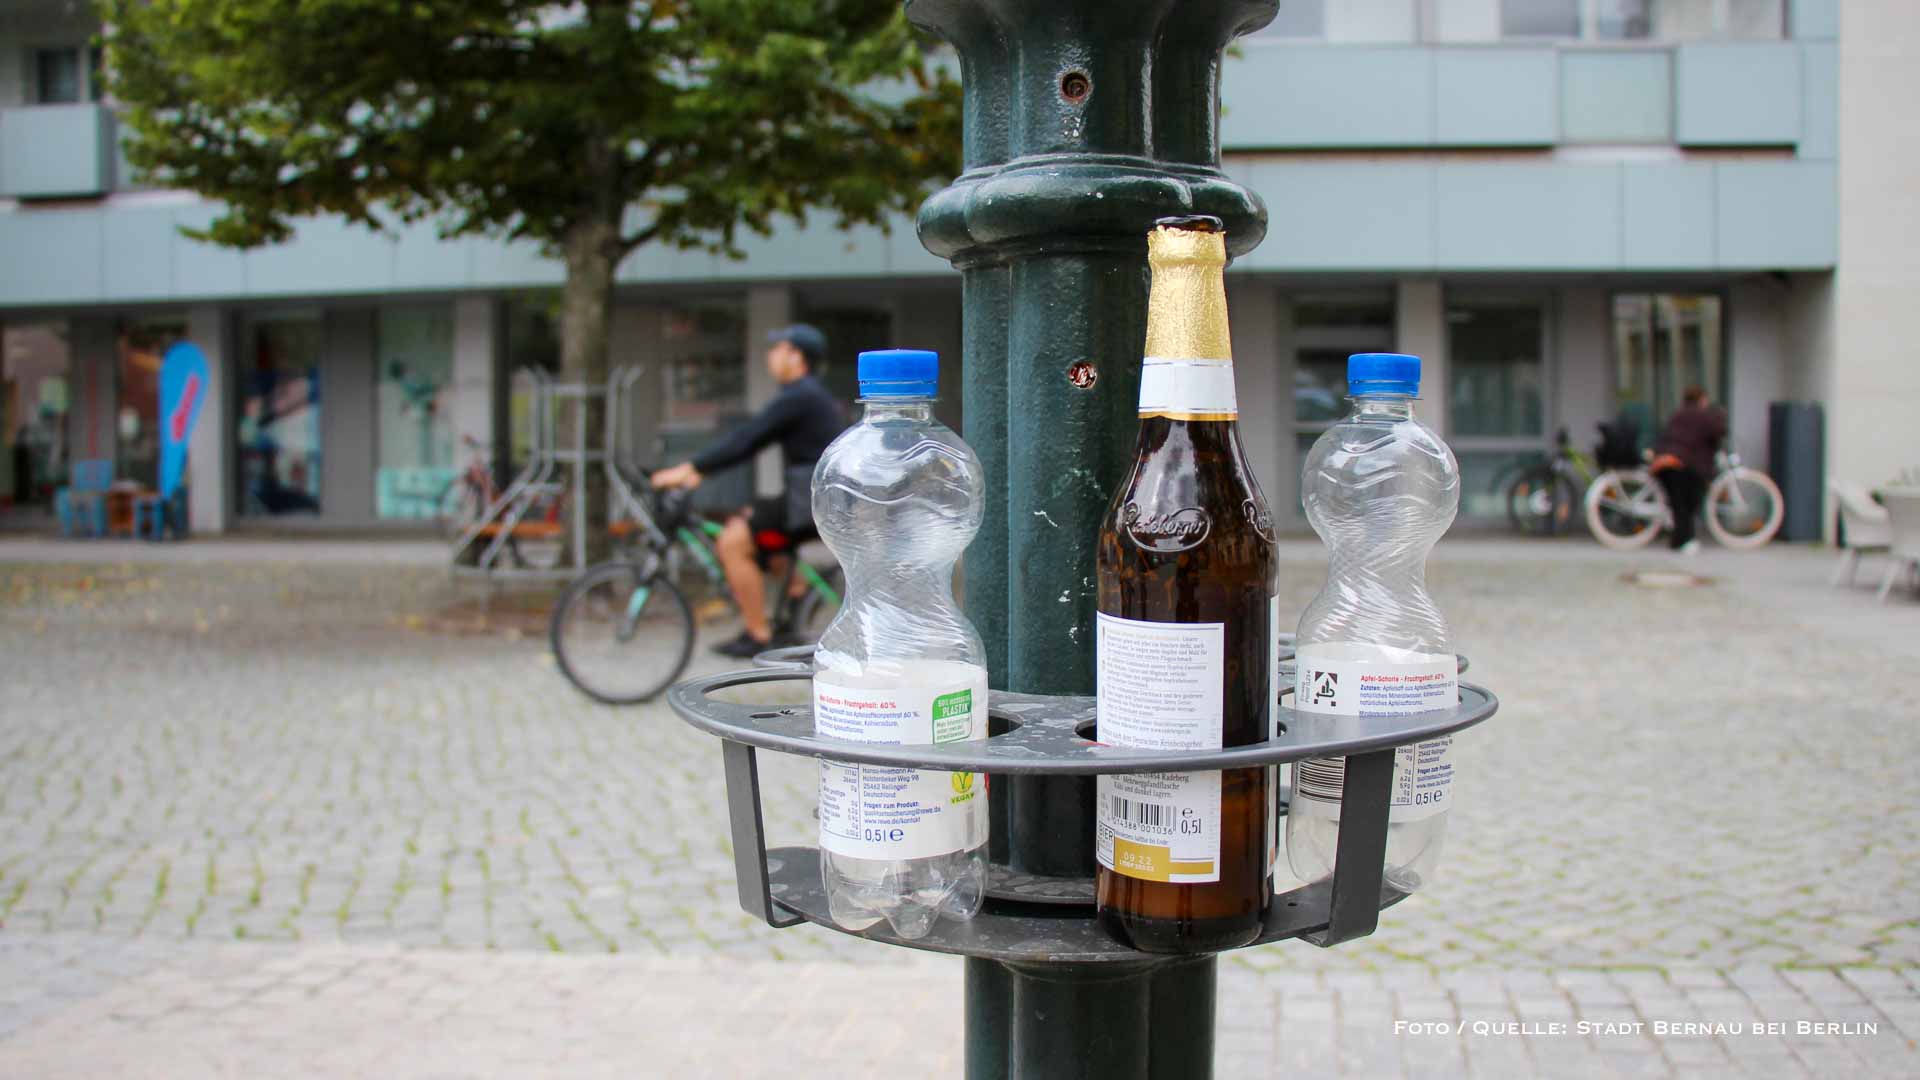 Im Test: Pfandringhalterungen für Pfandflschen in der Bernauer Innenstadt